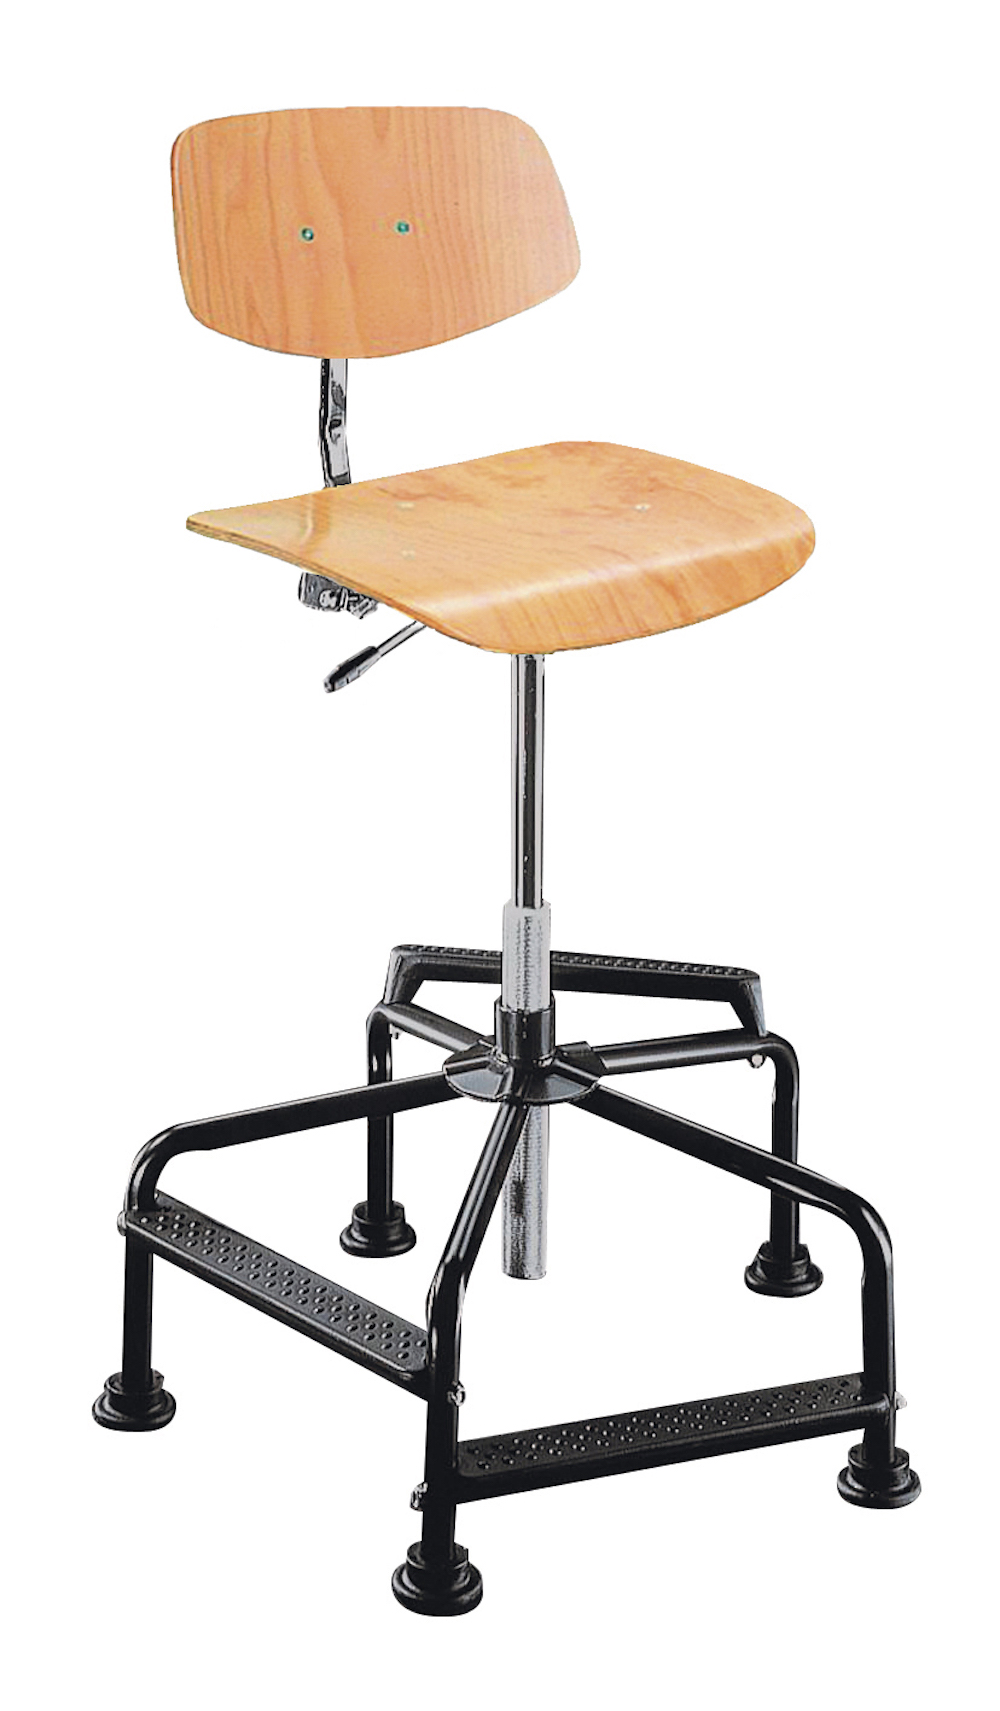 Arbeitsstuhl Arlington High mit kleiner Rückenlehne | Sitzhöhe 46-86cm | Tragfähigkeit 110kg | Buche-Sitz | Stahlrohr-Fußkreuz mit Gleiter & Fußstützen | Buche